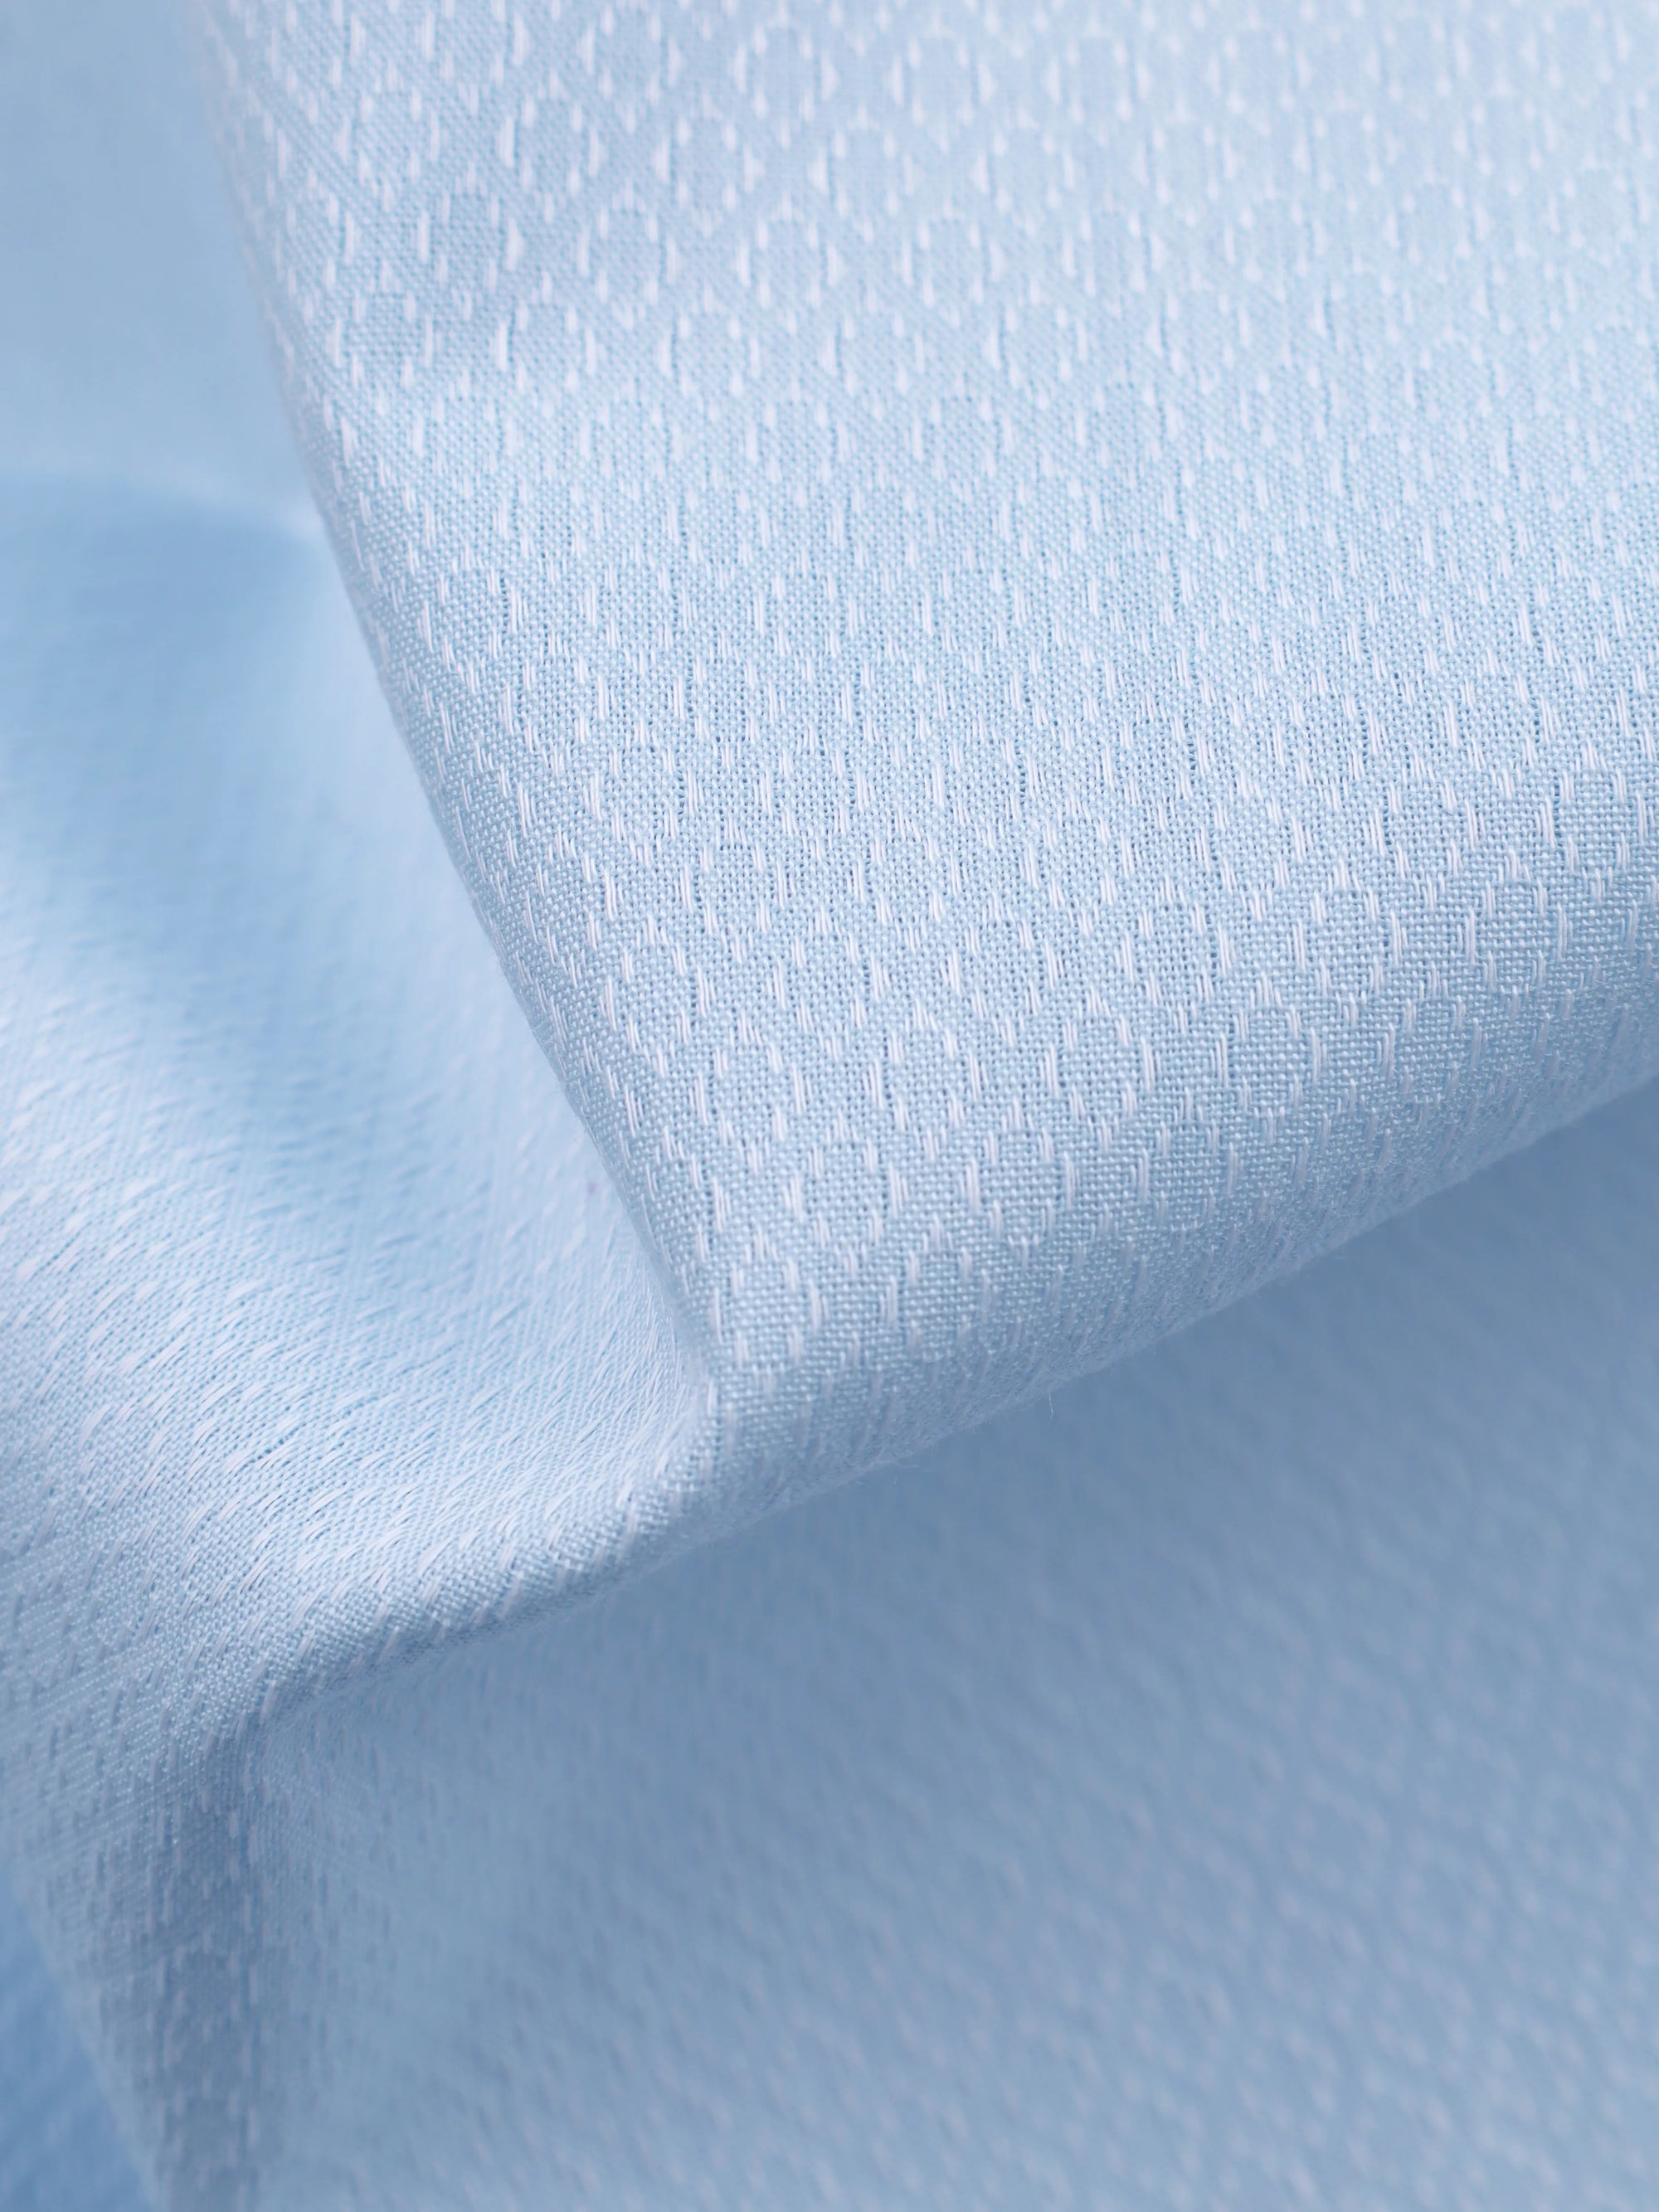 Baby Blue Dobby Textured Super Premium Cotton Shirt